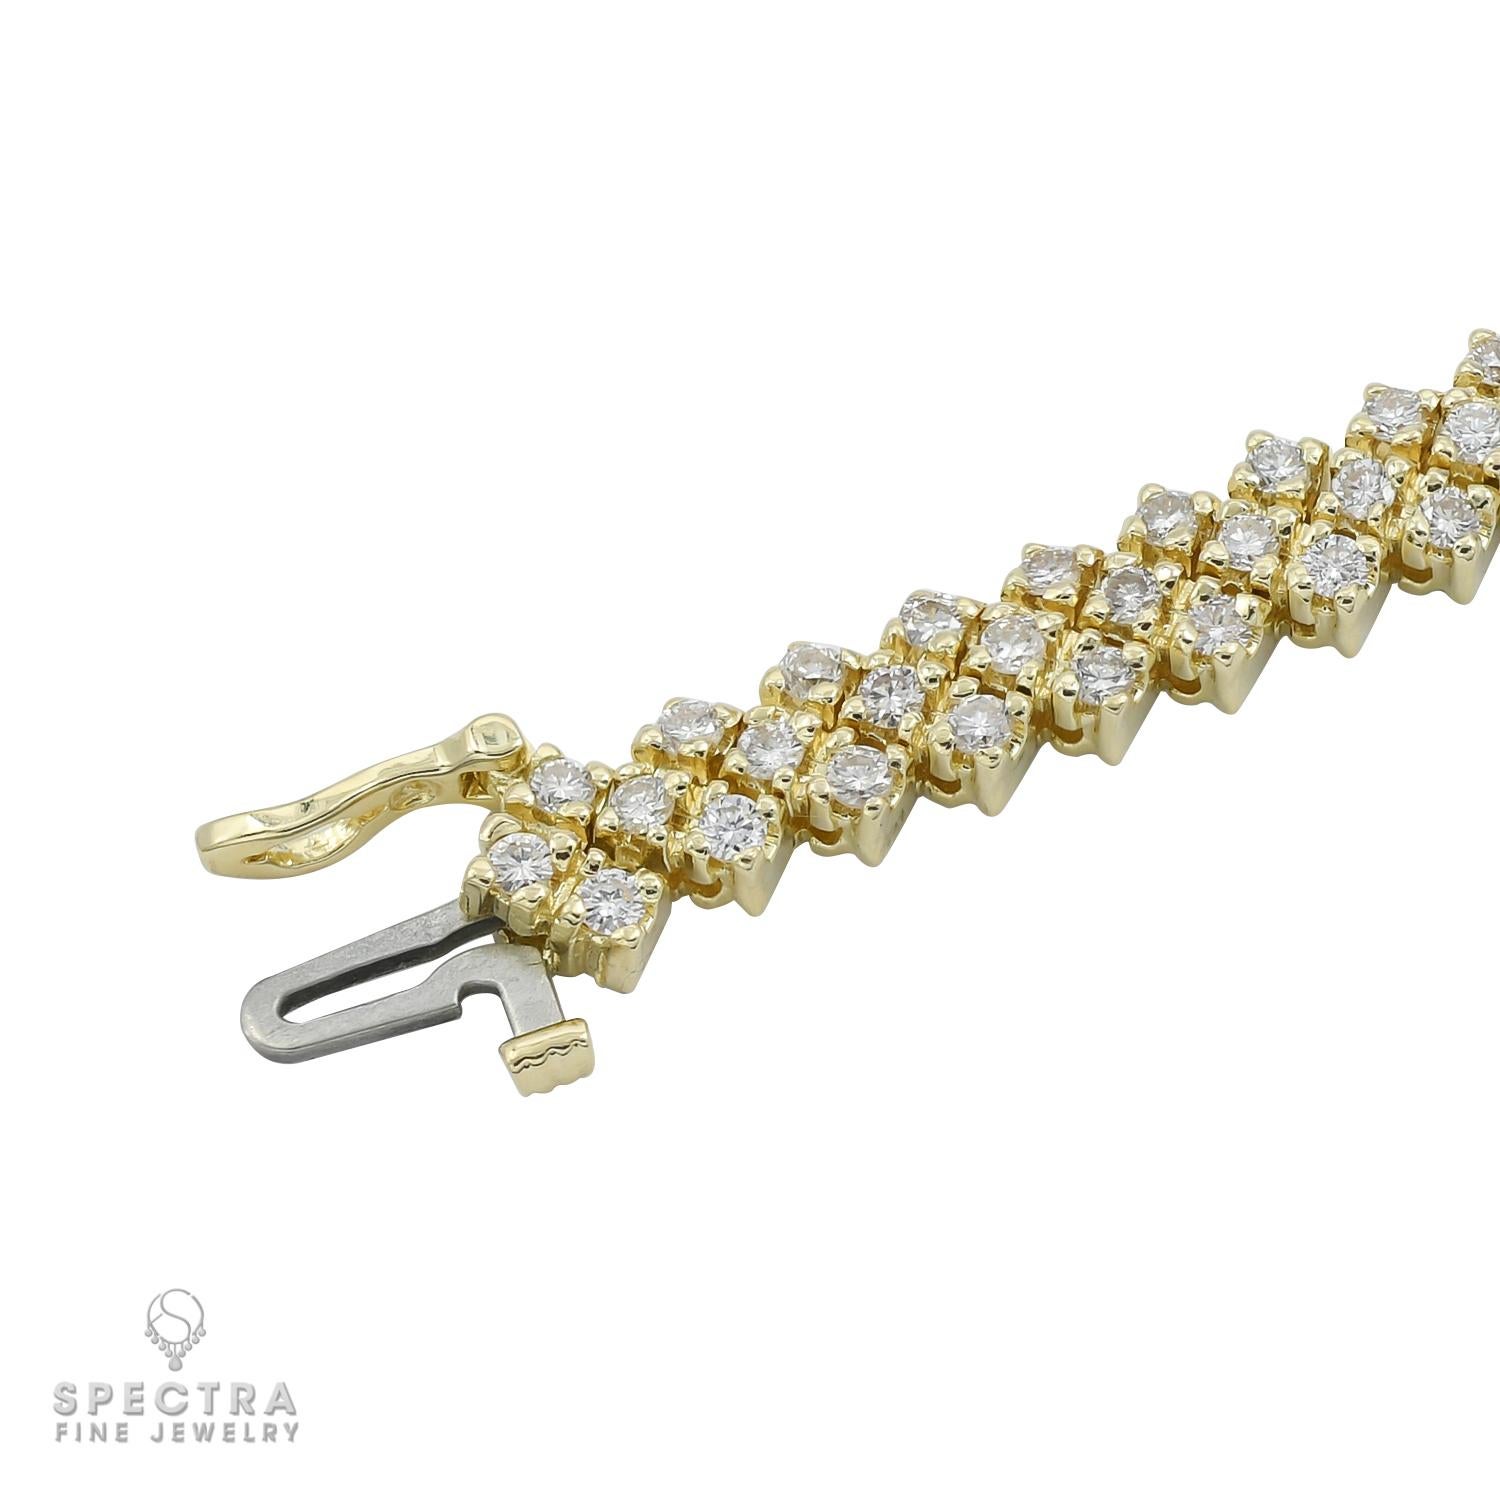 Un bracelet ligne serti de 135 diamants ronds pesant un total de 4,05 carats.
Chaque diamant fait environ 0,03 carat.
Les diamants sont naturels, de couleur G-H-I et de pureté VS-SI.
Le bracelet mesure 7,15 pouces de long.
Le métal est de l'or jaune